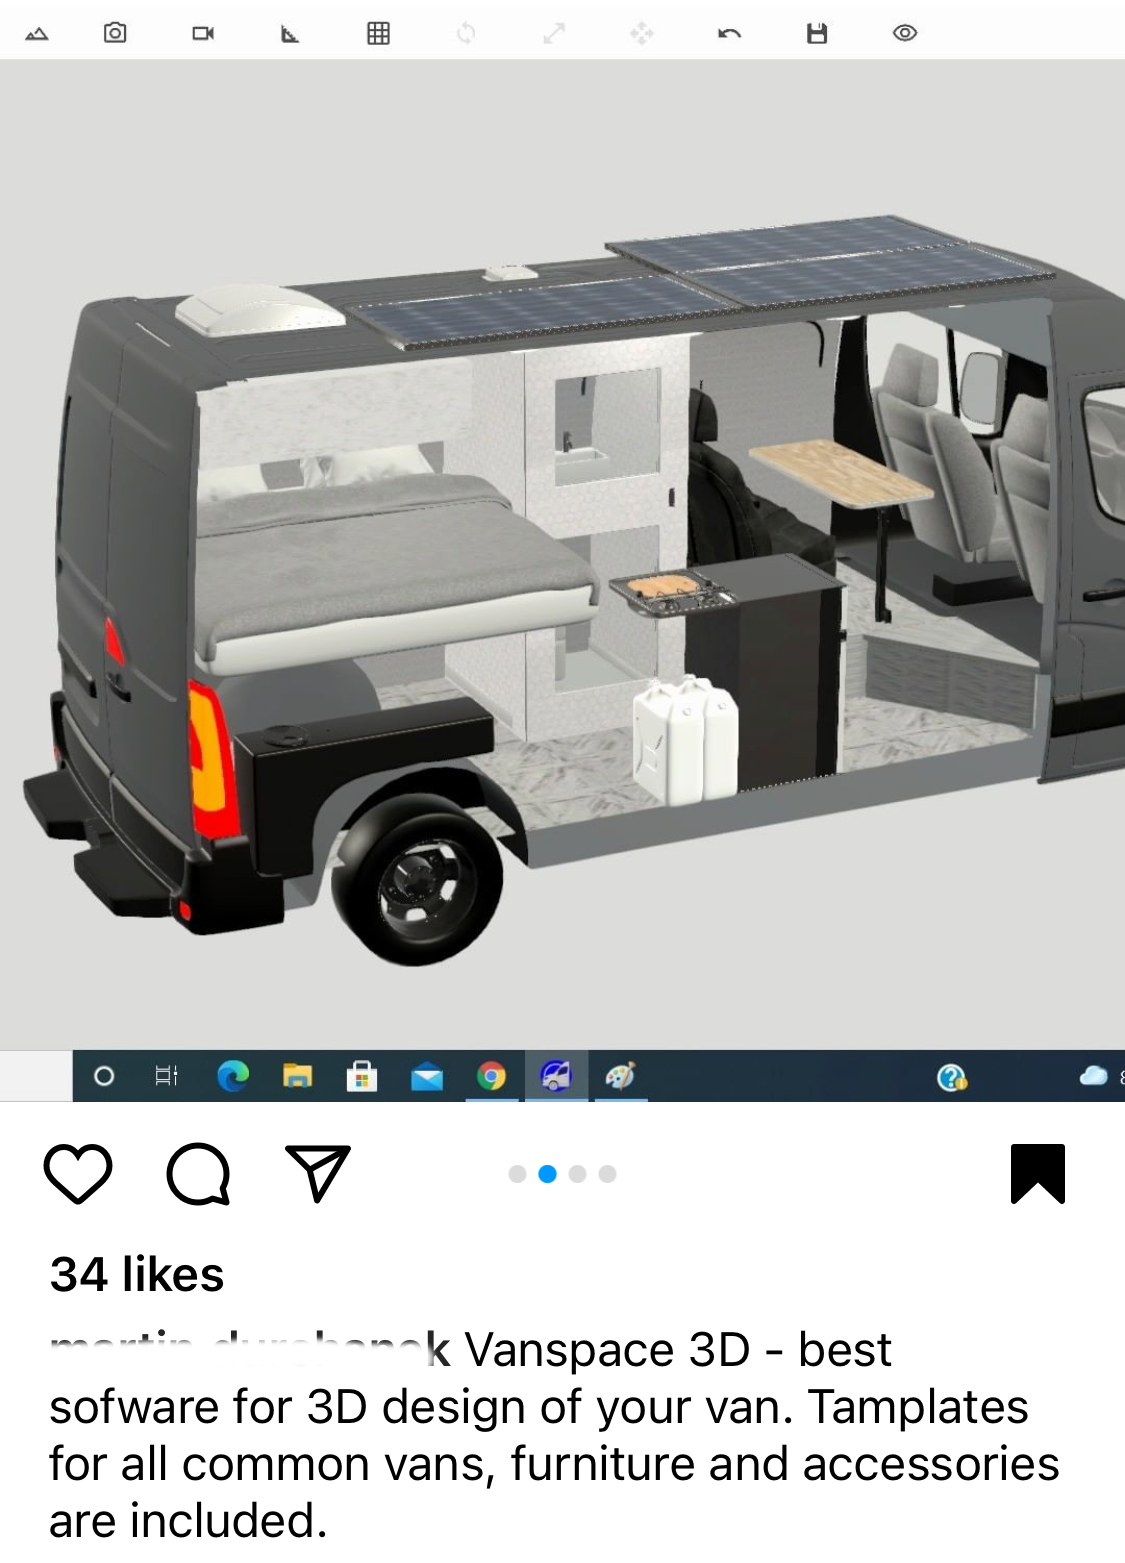 vanspace 3D - #1 Van Design Software to Create Camper Van Layouts